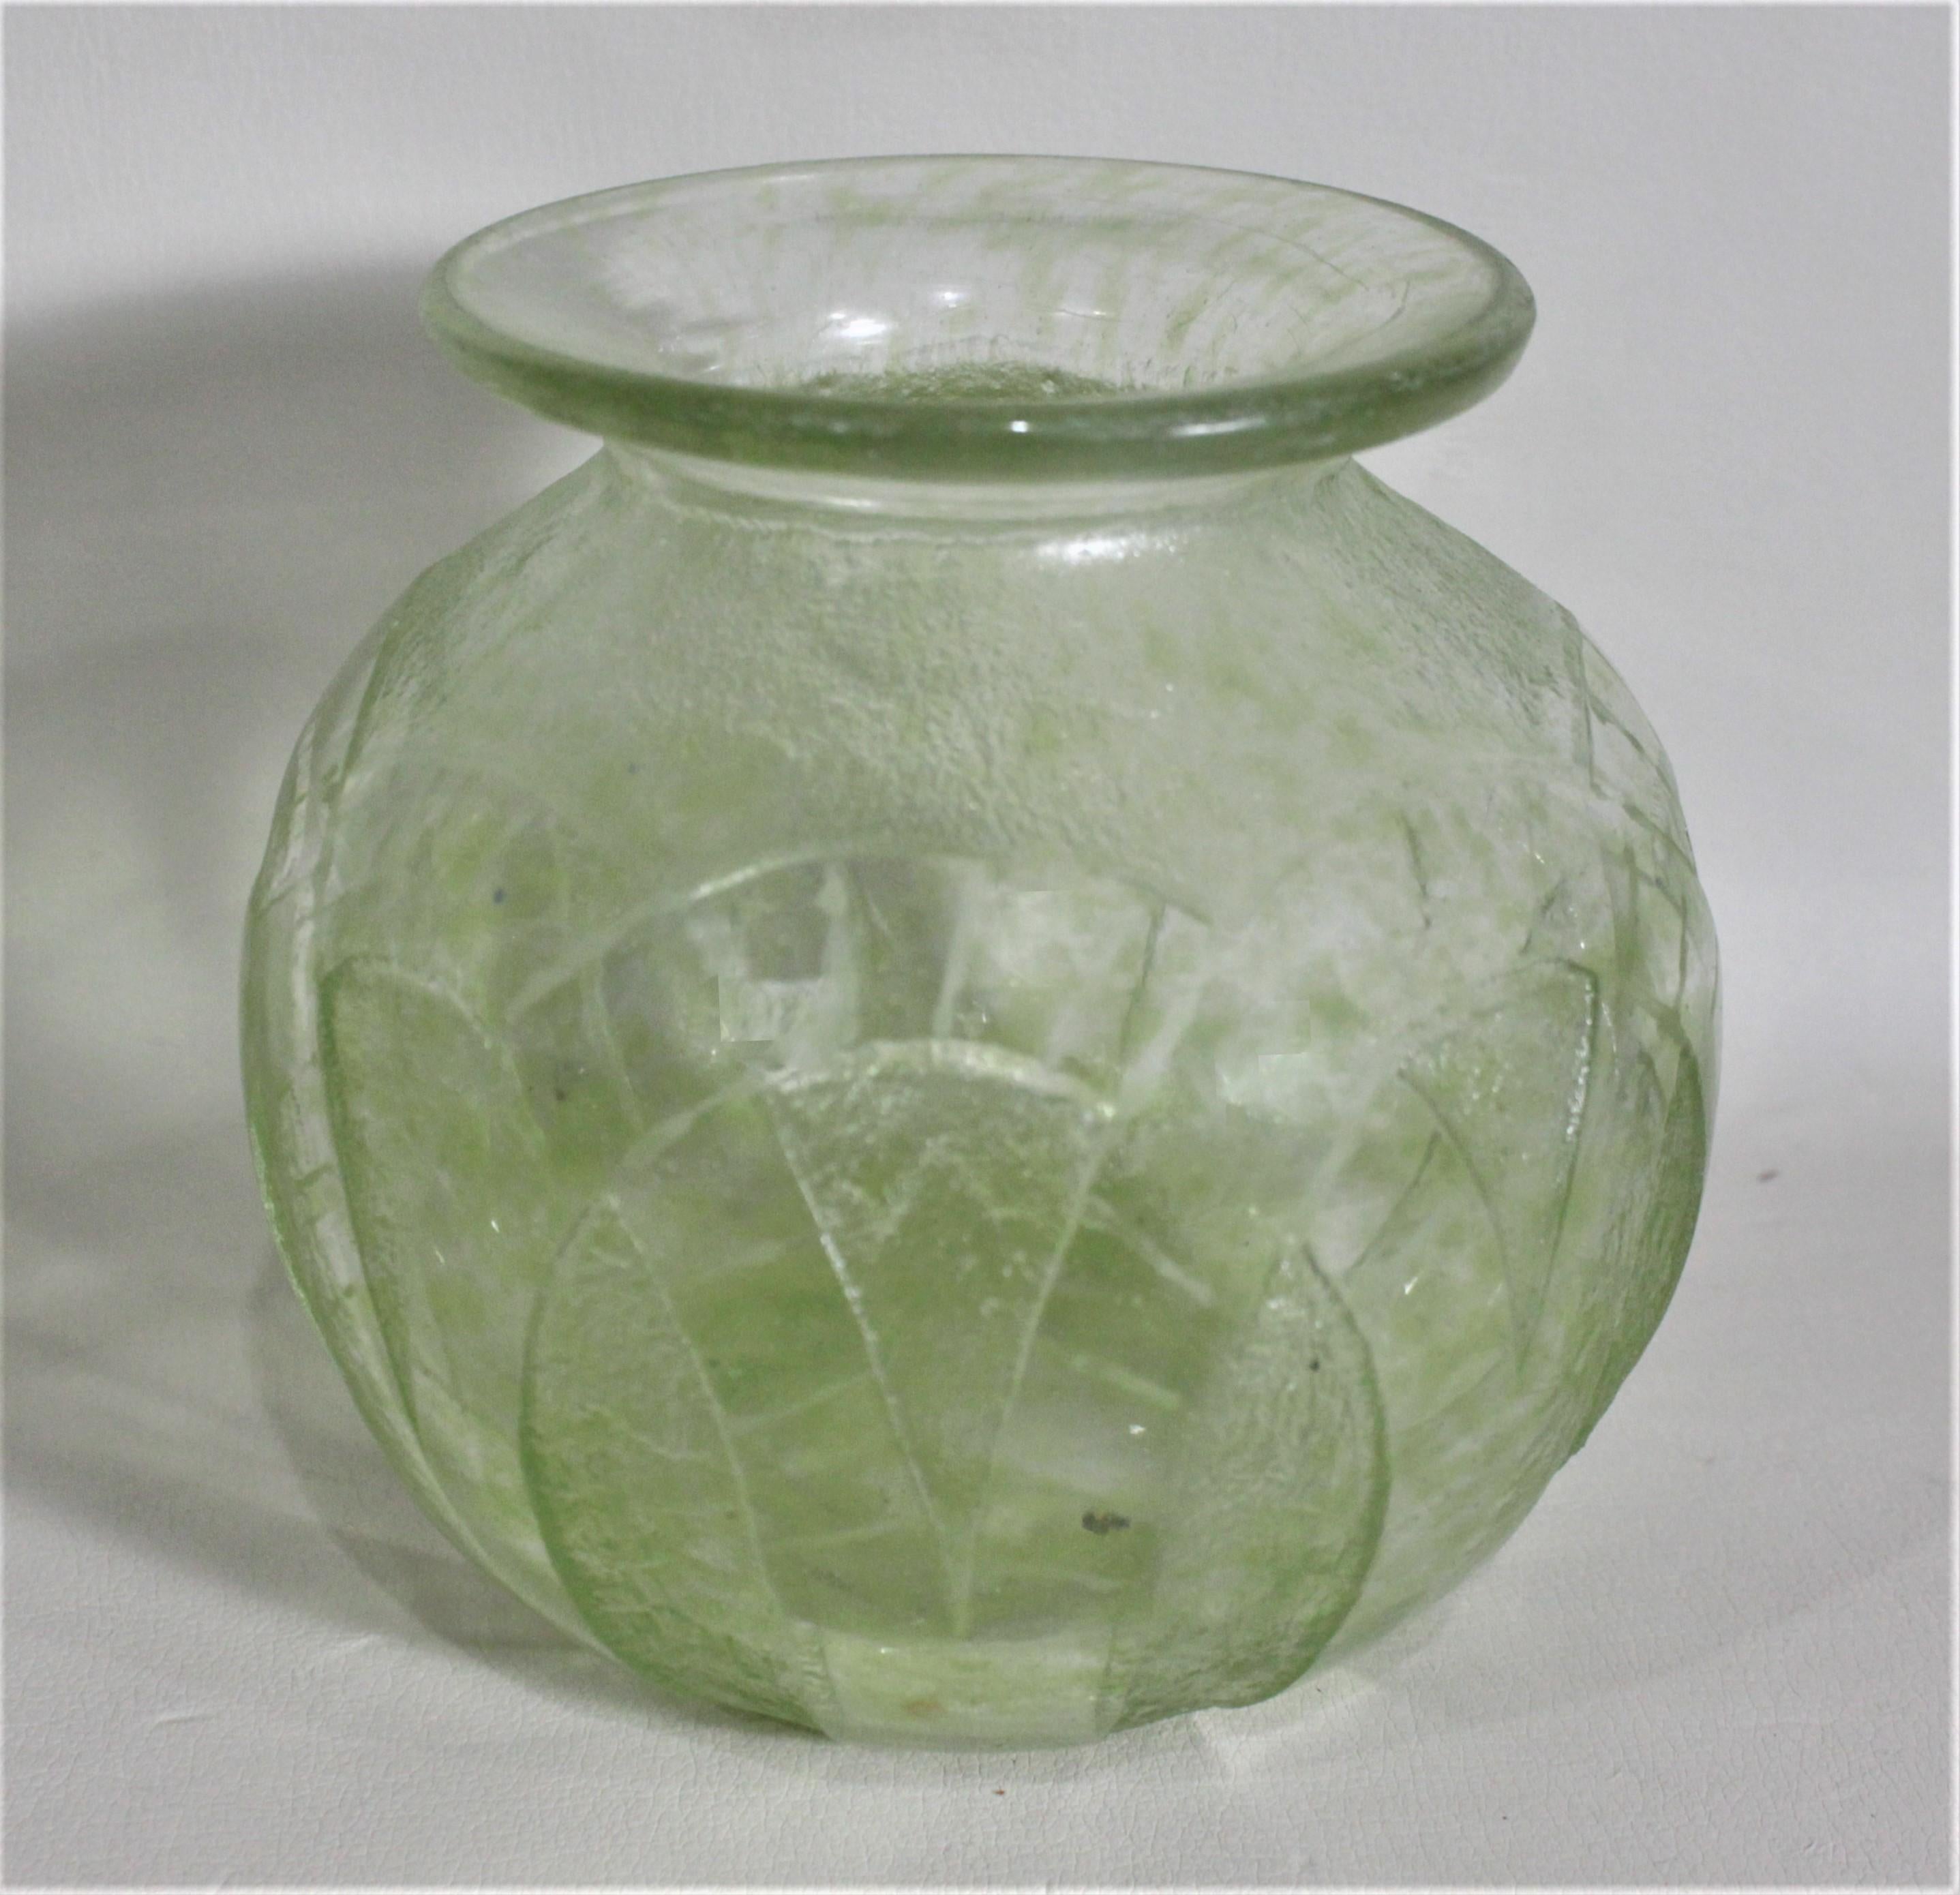 Diese grün gefärbte und mit Säure geätzte Vase im Art déco-Stil wurde vermutlich um 1920 in Frankreich hergestellt. In die Seiten dieser gedrungenen, bauchigen Vase ist ein umgekehrtes Rautenmuster tief eingraviert, das außen strukturiert ist. Das